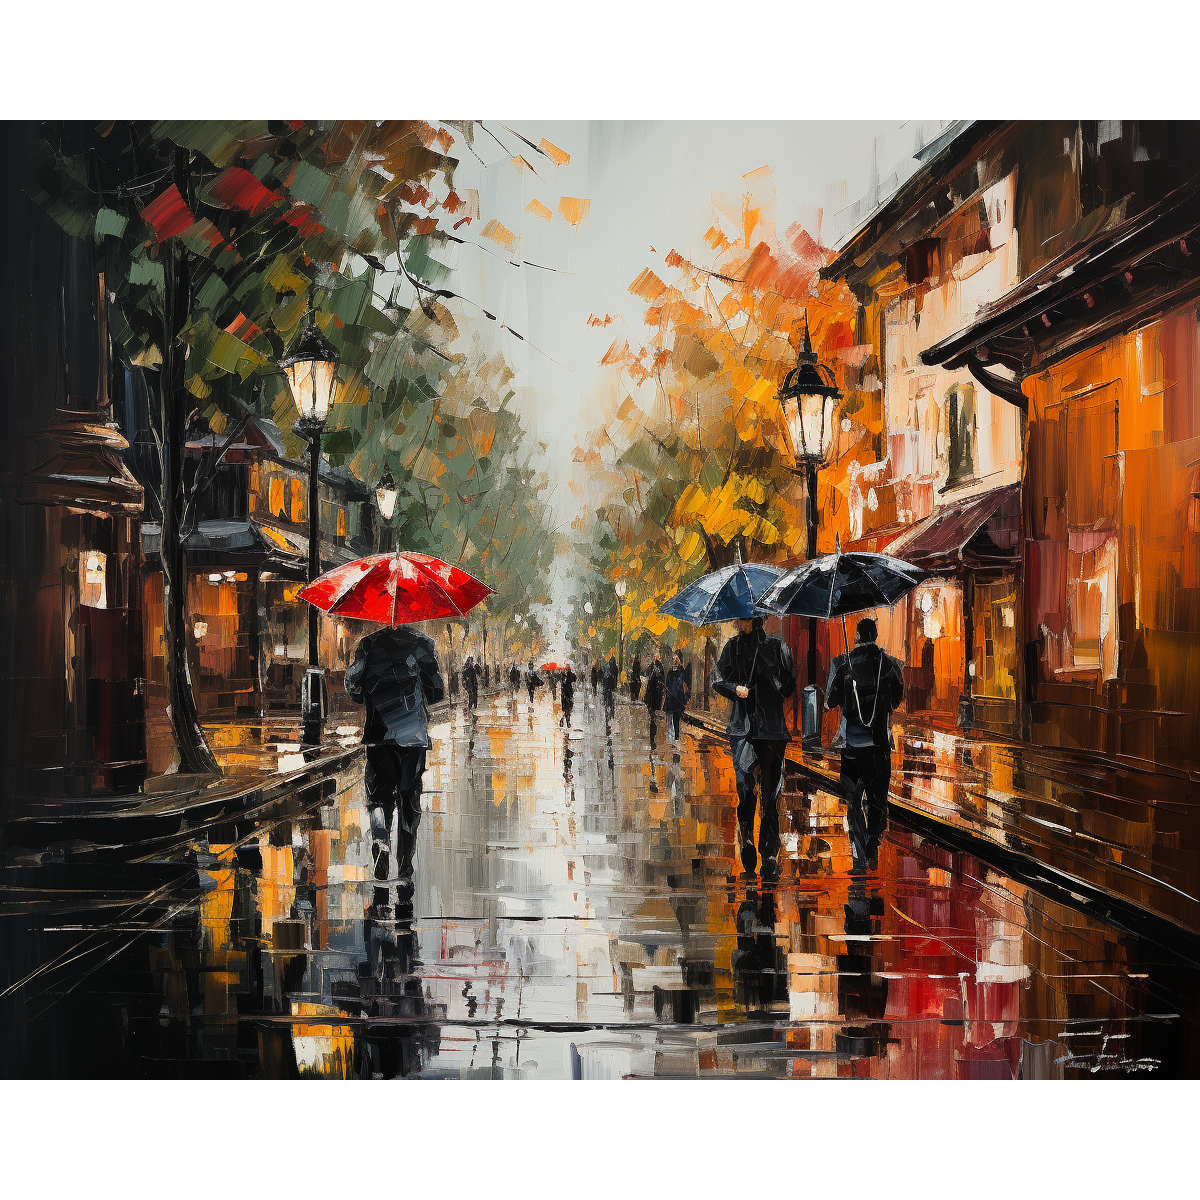 Promenade en ville sous la pluie